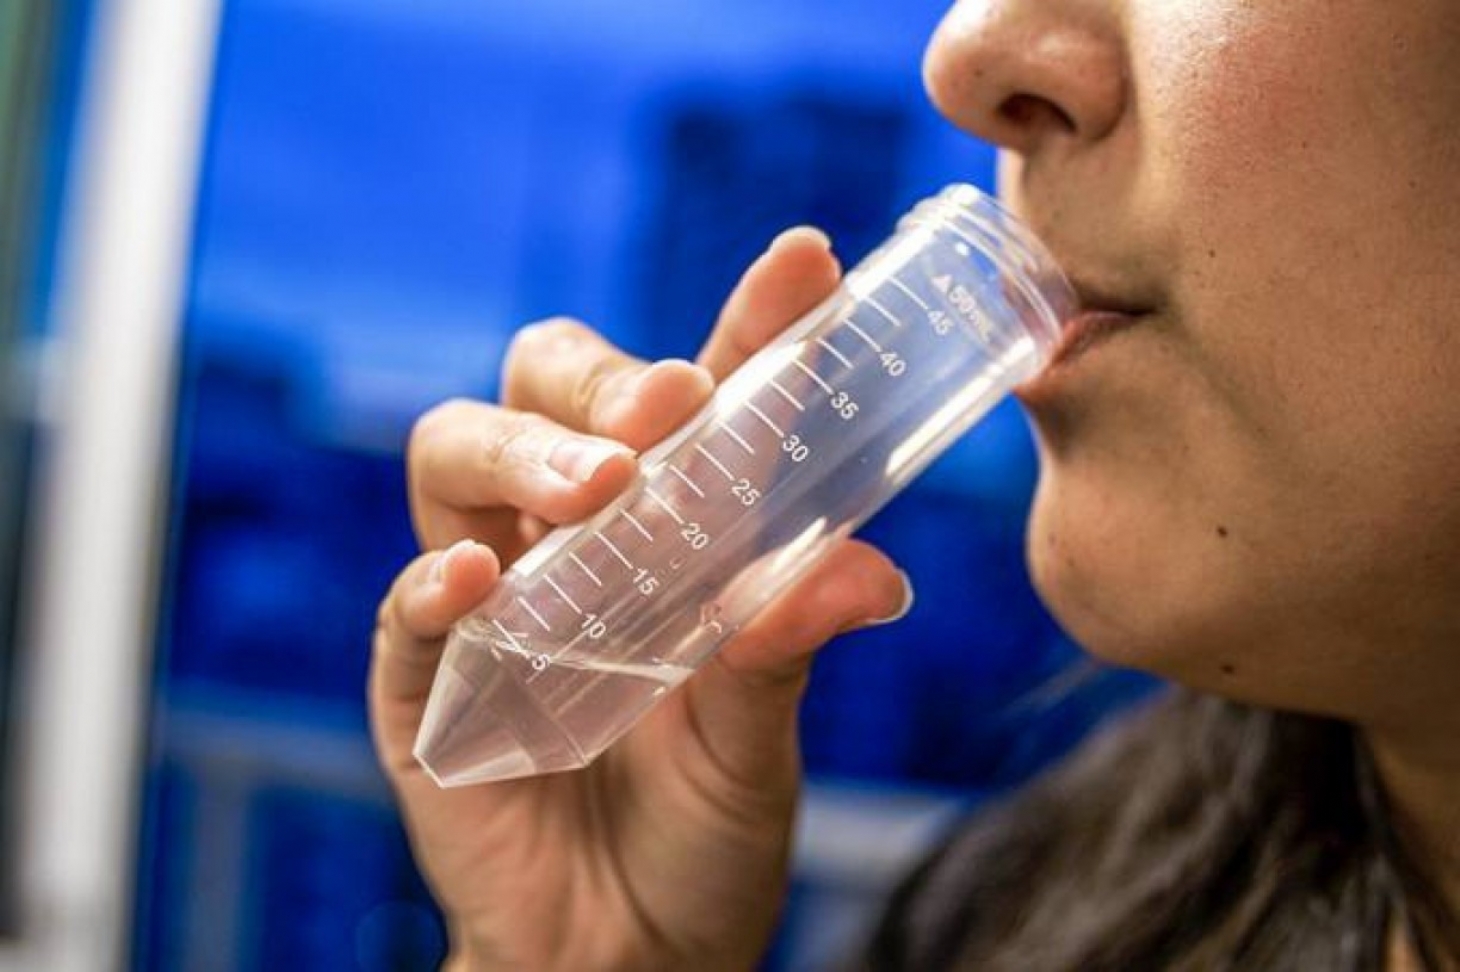 Novo teste rápido detecta coronavírus na saliva e também indica a carga viral | Jornal da Orla